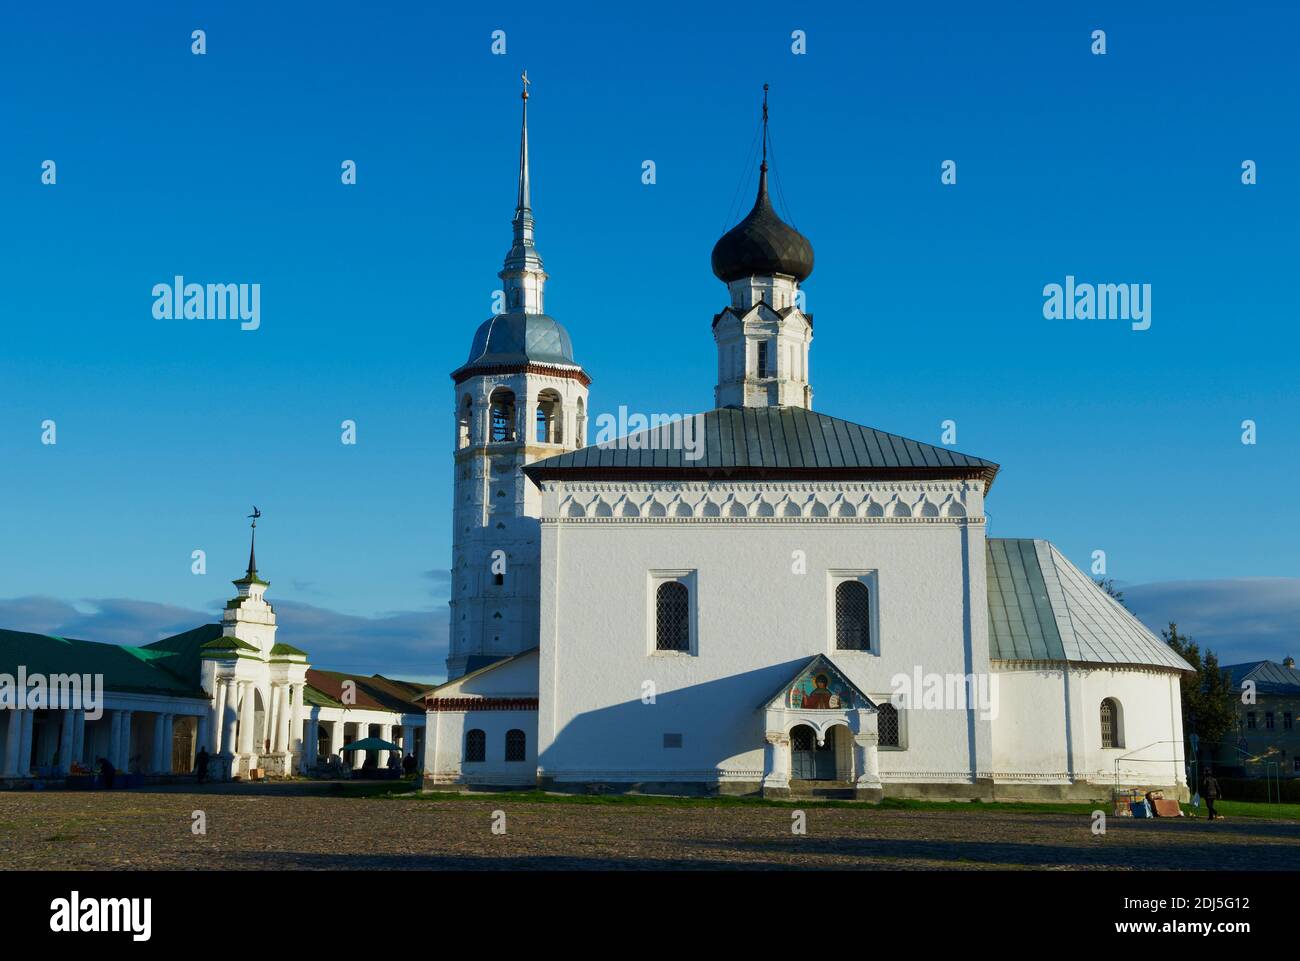 Russie, Rossiya, Vladimir Oblast, Golden Ring, Suzdal, patrimoine mondial de l'UNESCO, Torgovaya Ploshchad (place du commerce) et église de la Résurrection Banque D'Images